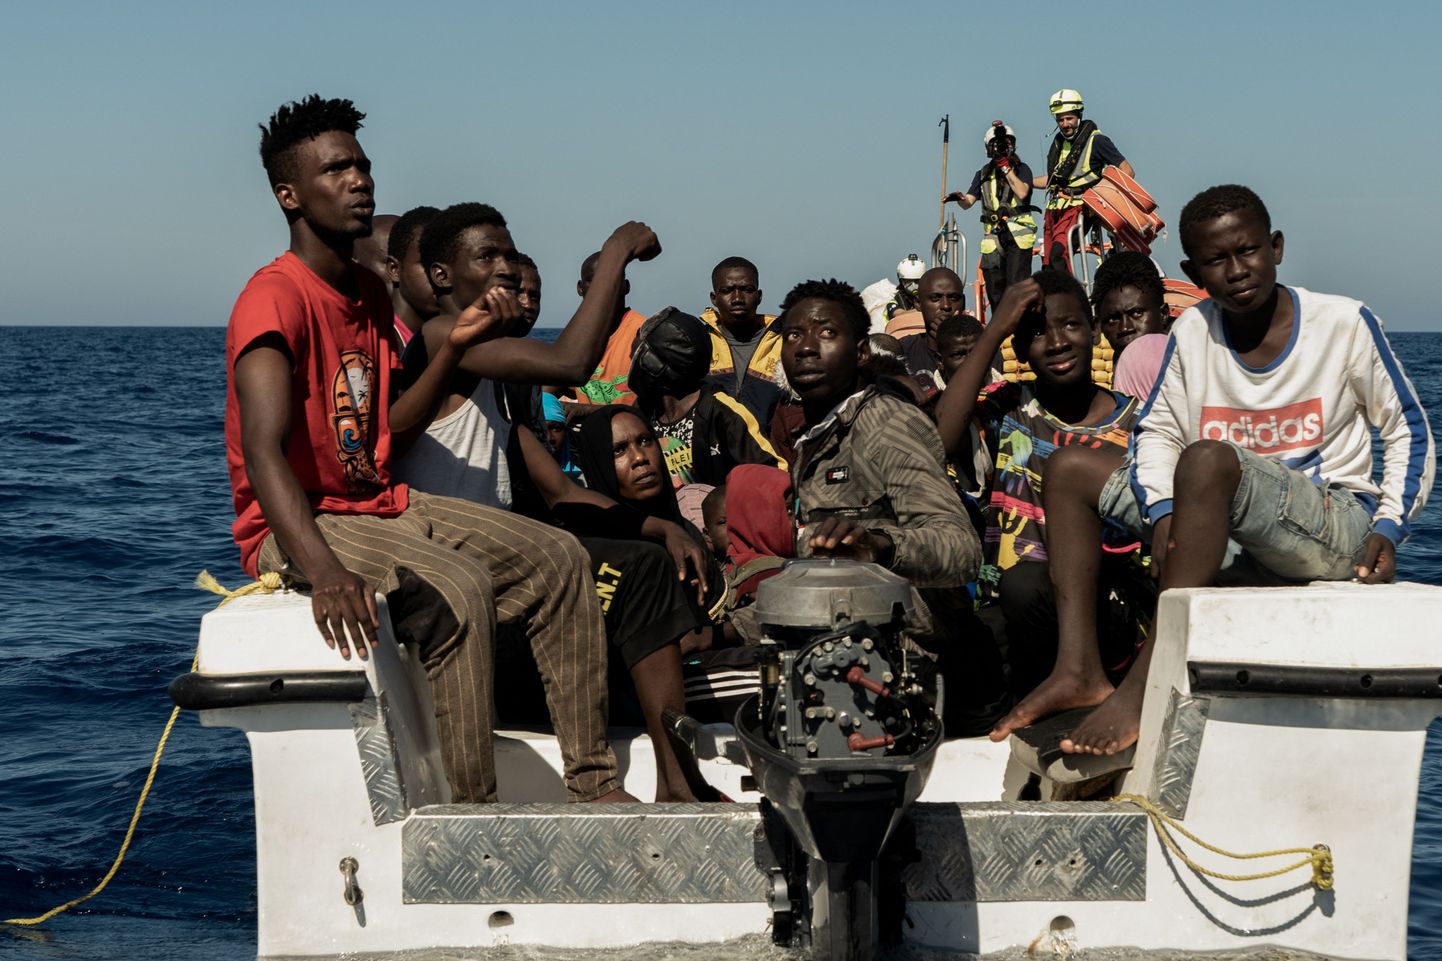 Migrandid Põhja-Aafrikast üritavad üle Vahemere jõuda Euroopasse, võttes paatide ja katkiste väikelaevadega ette eluohtliku teekonna. Pildil olevad migrandid päästis heategevusorganisatsioon SOS Mediterranee 25. oktoobril 2022 Vahemere keskosas